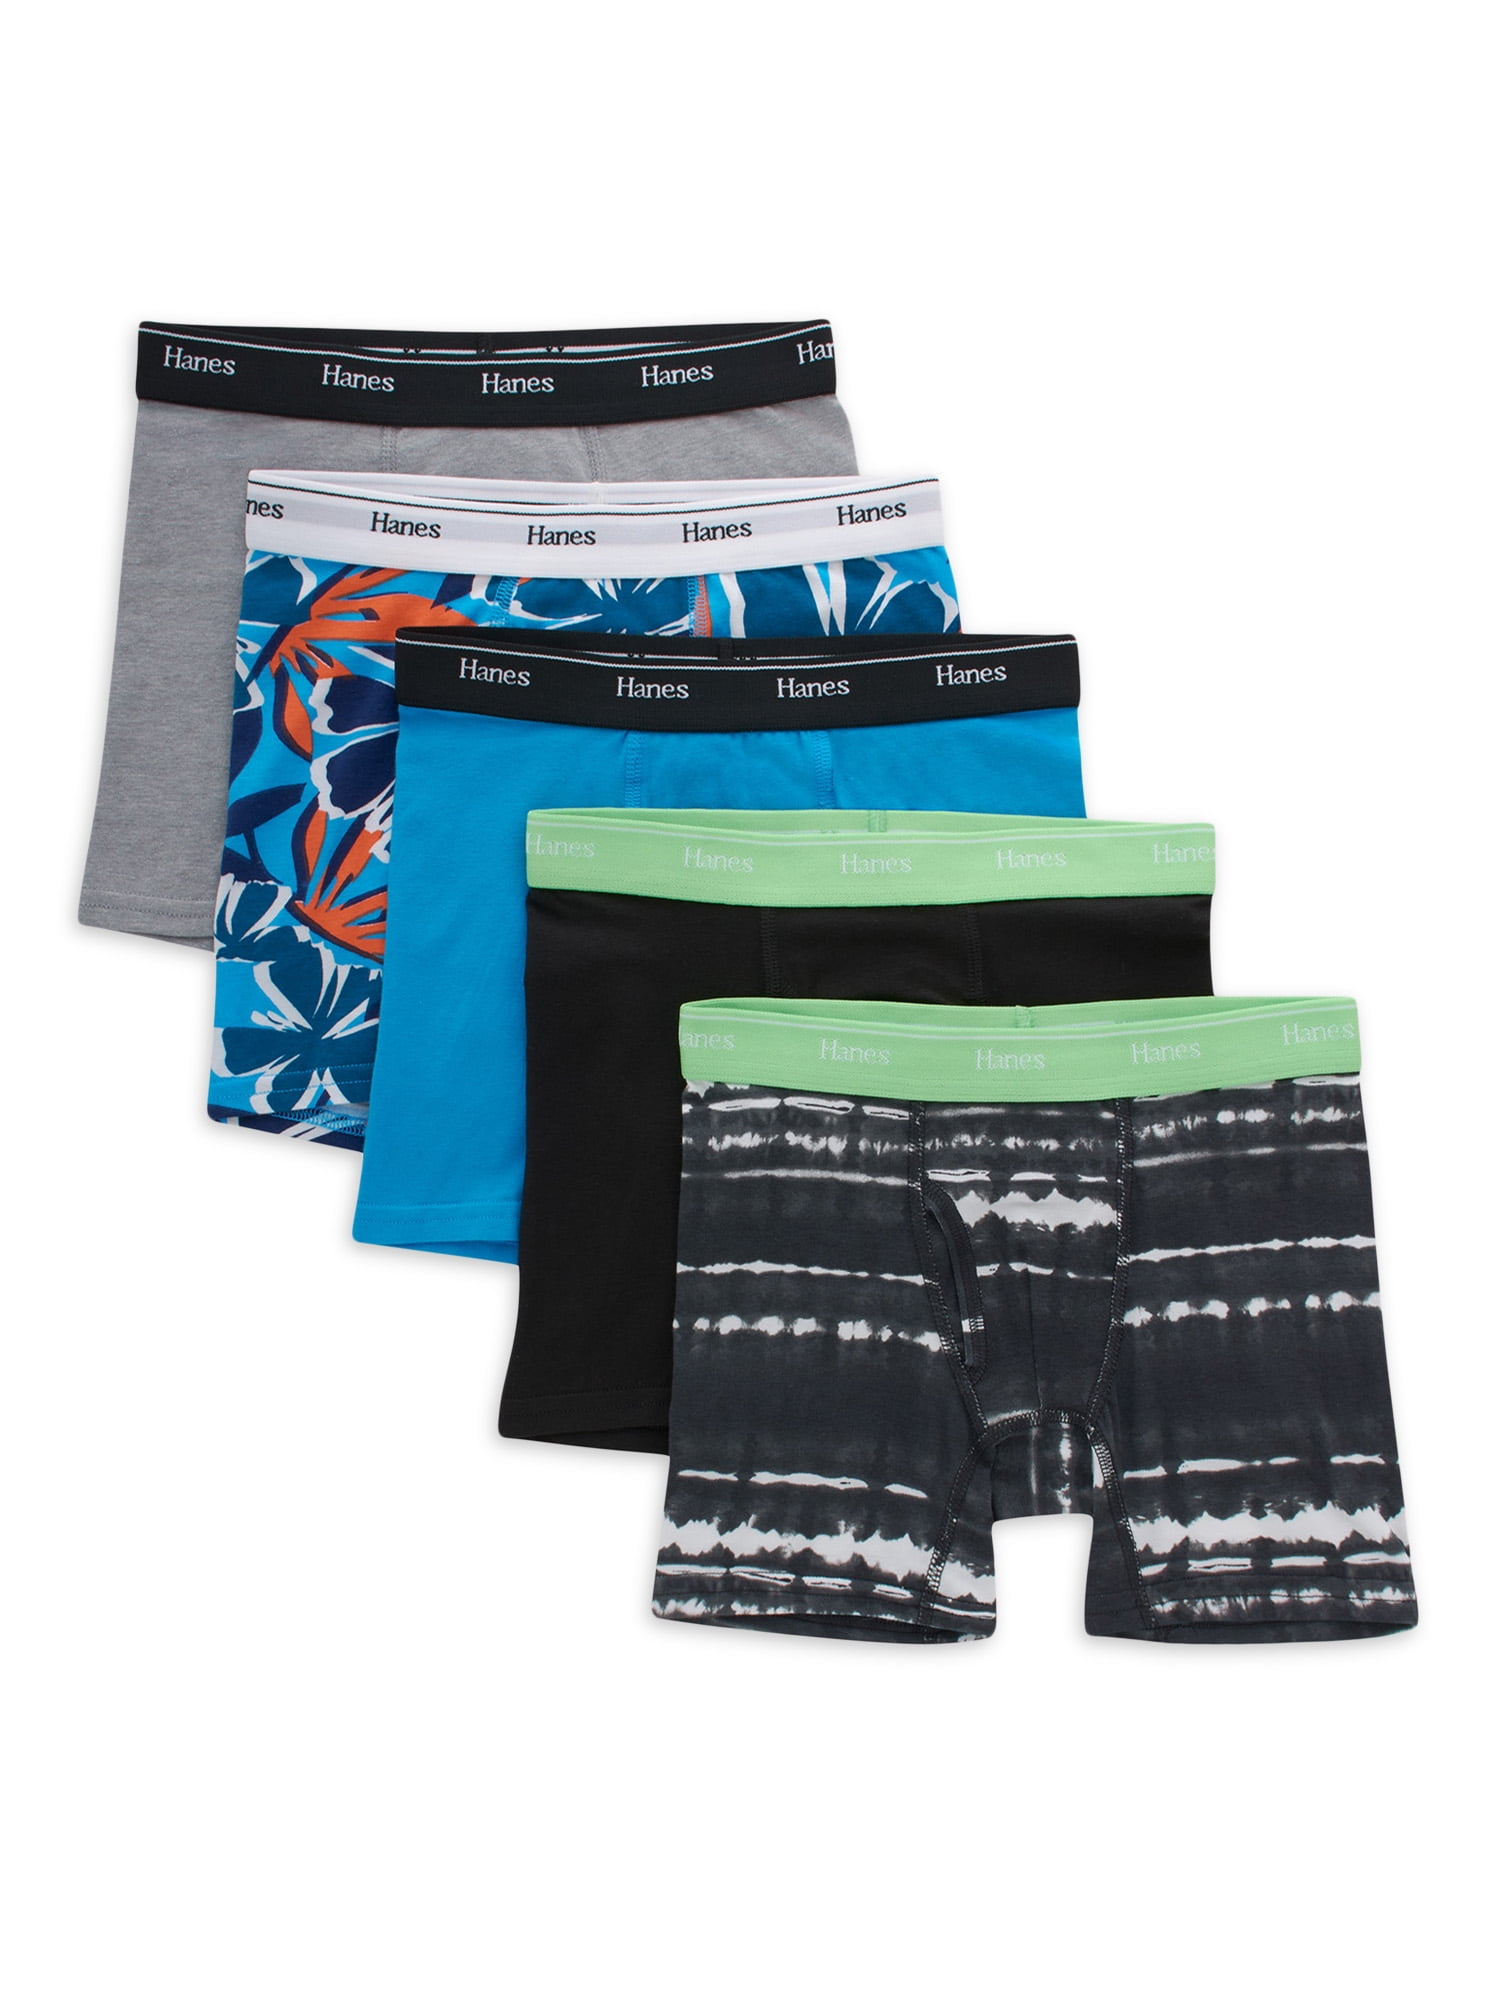 Hanes Originals Boys' Underwear Boxer Briefs, 5-Pack, Sizes S-XL ...